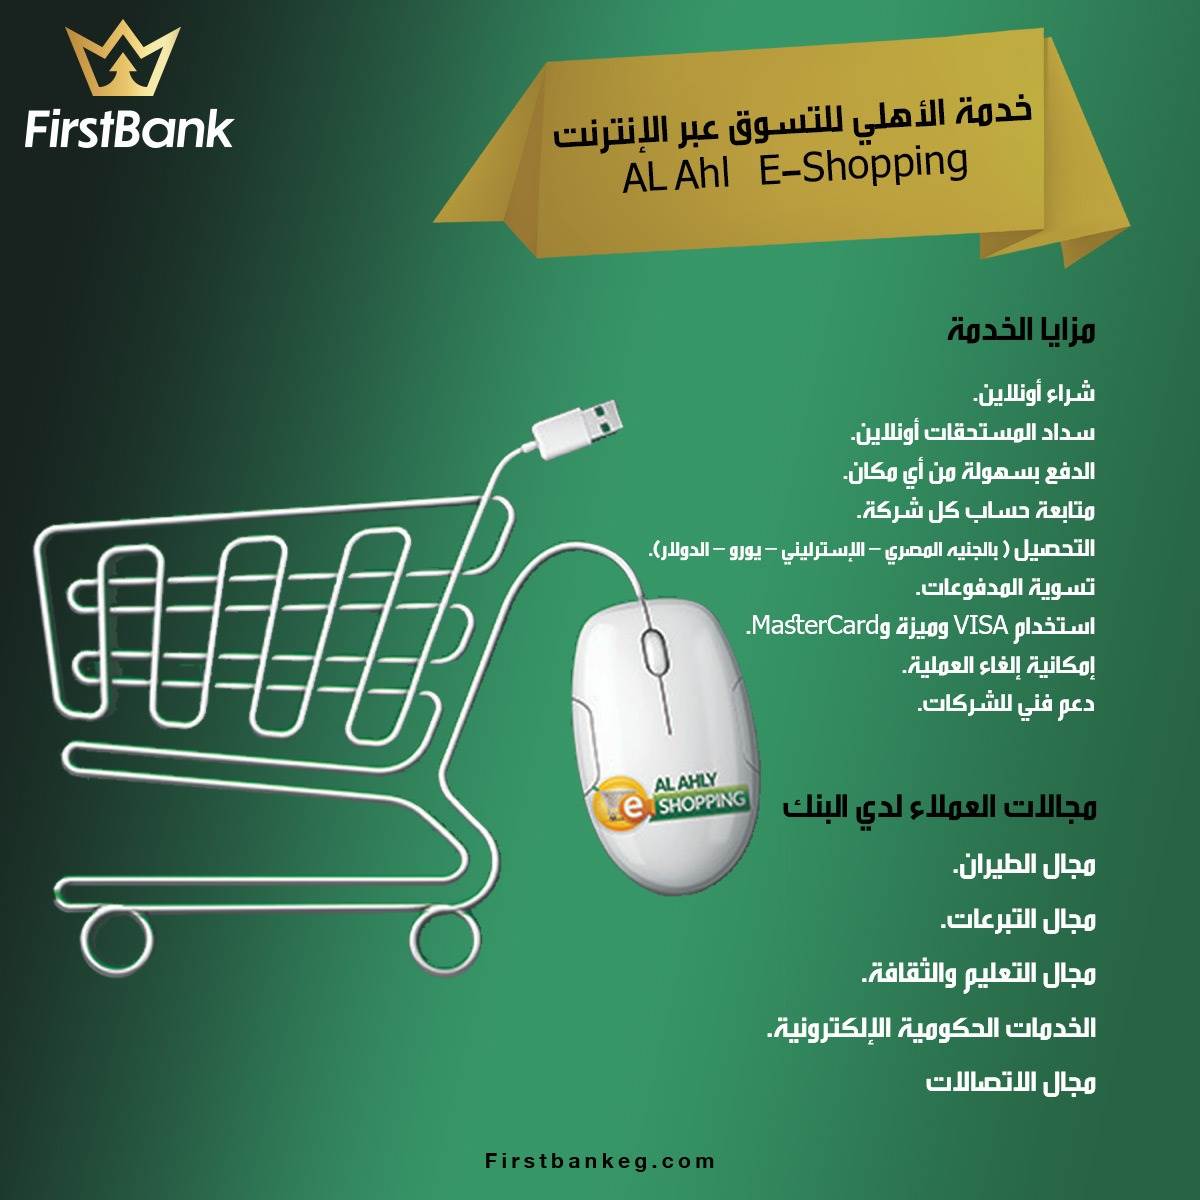 FirstBank | خدمة الأهلي للتسوق عبر الإنترنت